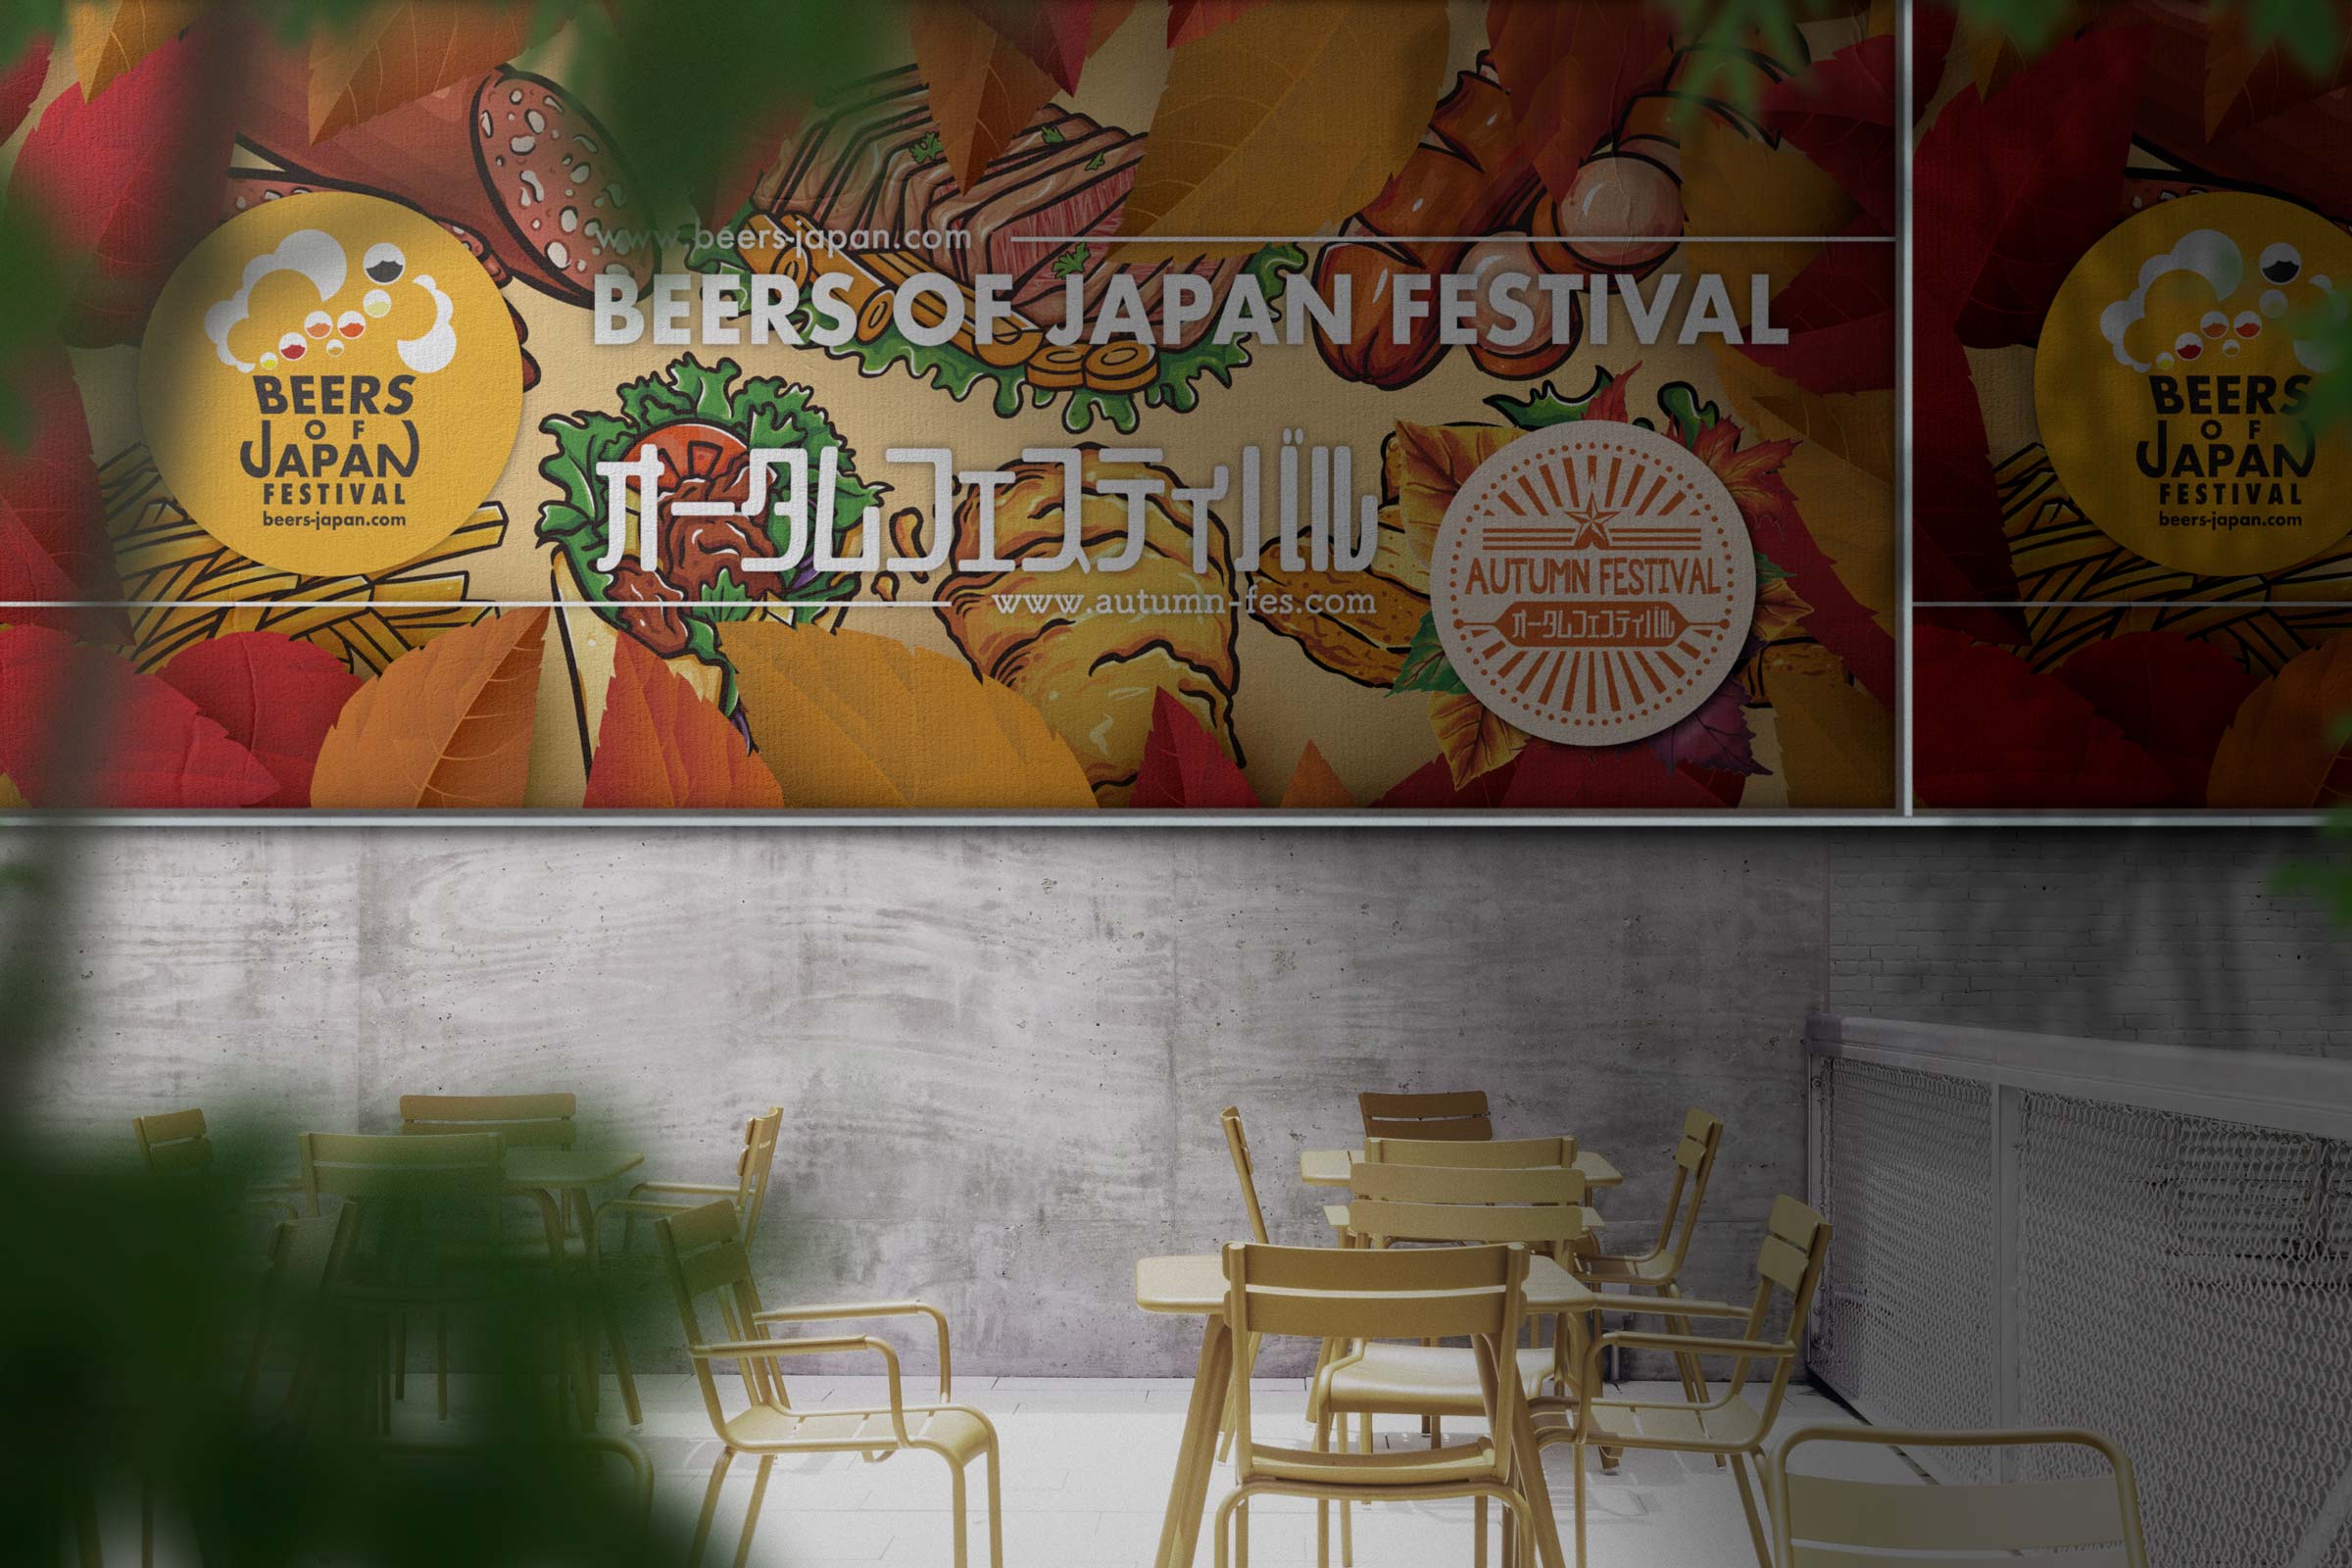 会場内のフードコートにビアーズオブジャパンフェスティバルとオータムフェスティバルの大きな看板が壁に飾られた写真